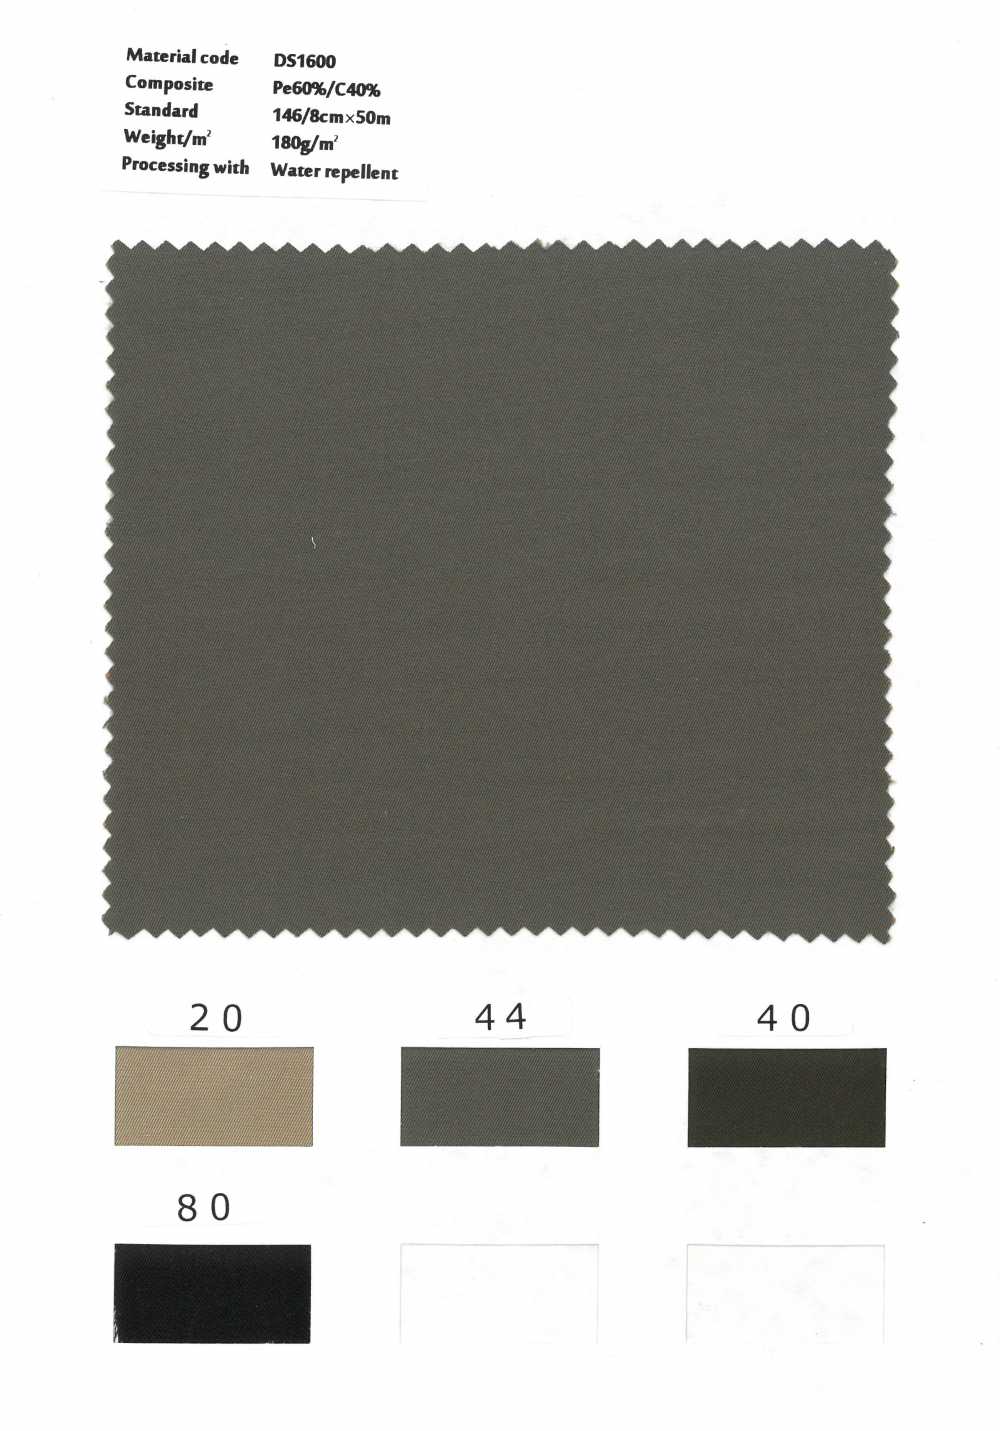 DS1600 Sợi Bông Polyester được Nhuộm Gabardine Hoàn Thiện Chống Thấm Nước[Vải] Styletex